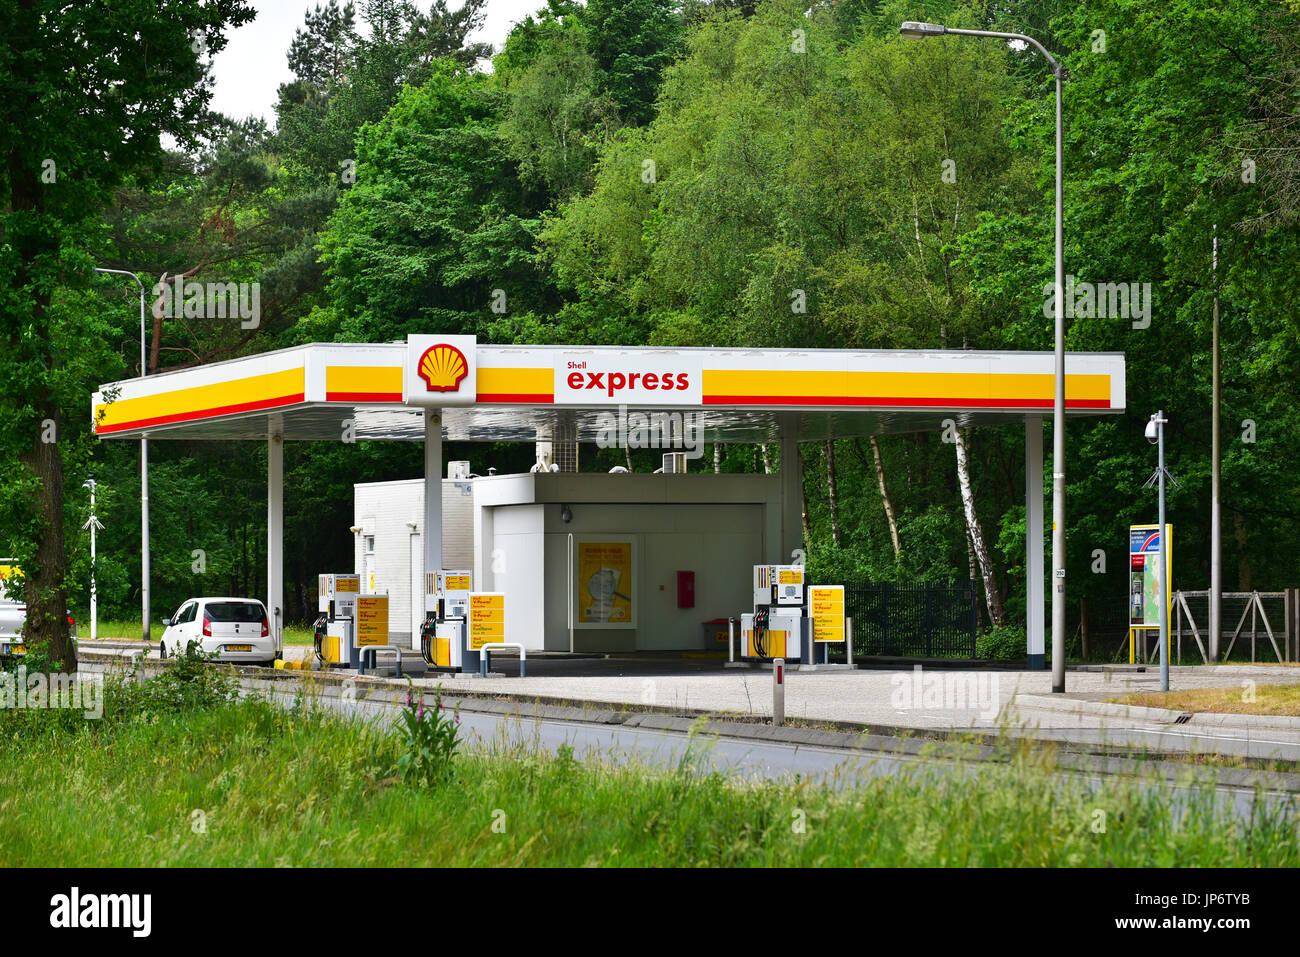 No tripulados Shell self-service express estación de combustible Foto de stock